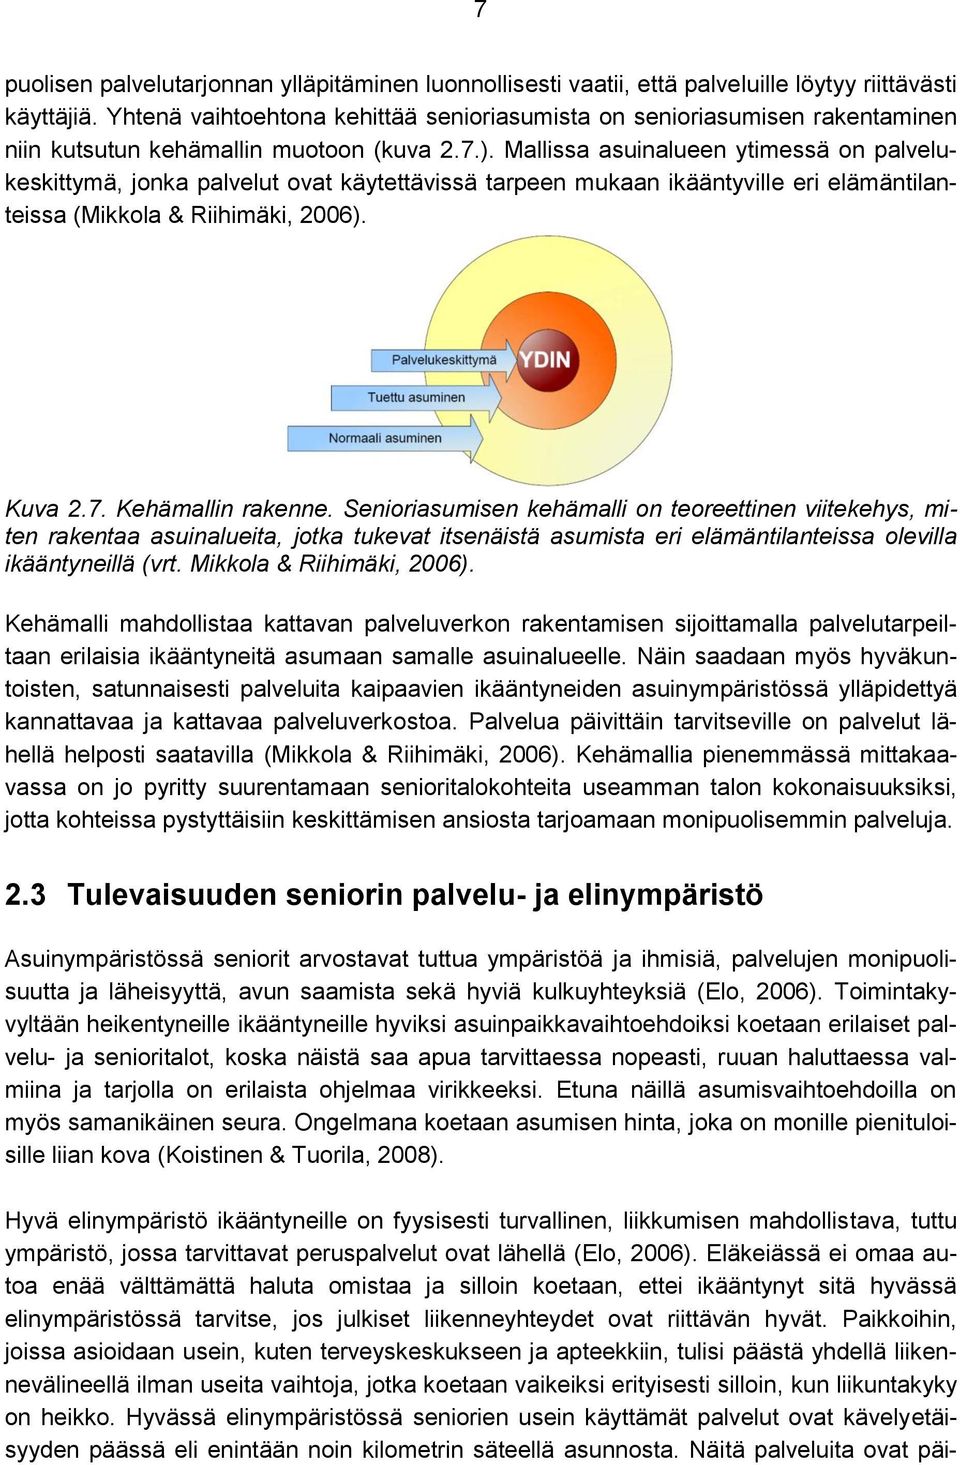 Mallissa asuinalueen ytimessä on palvelukeskittymä, jonka palvelut ovat käytettävissä tarpeen mukaan ikääntyville eri elämäntilanteissa (Mikkola & Riihimäki, 2006). Kuva 2.7. Kehämallin rakenne.